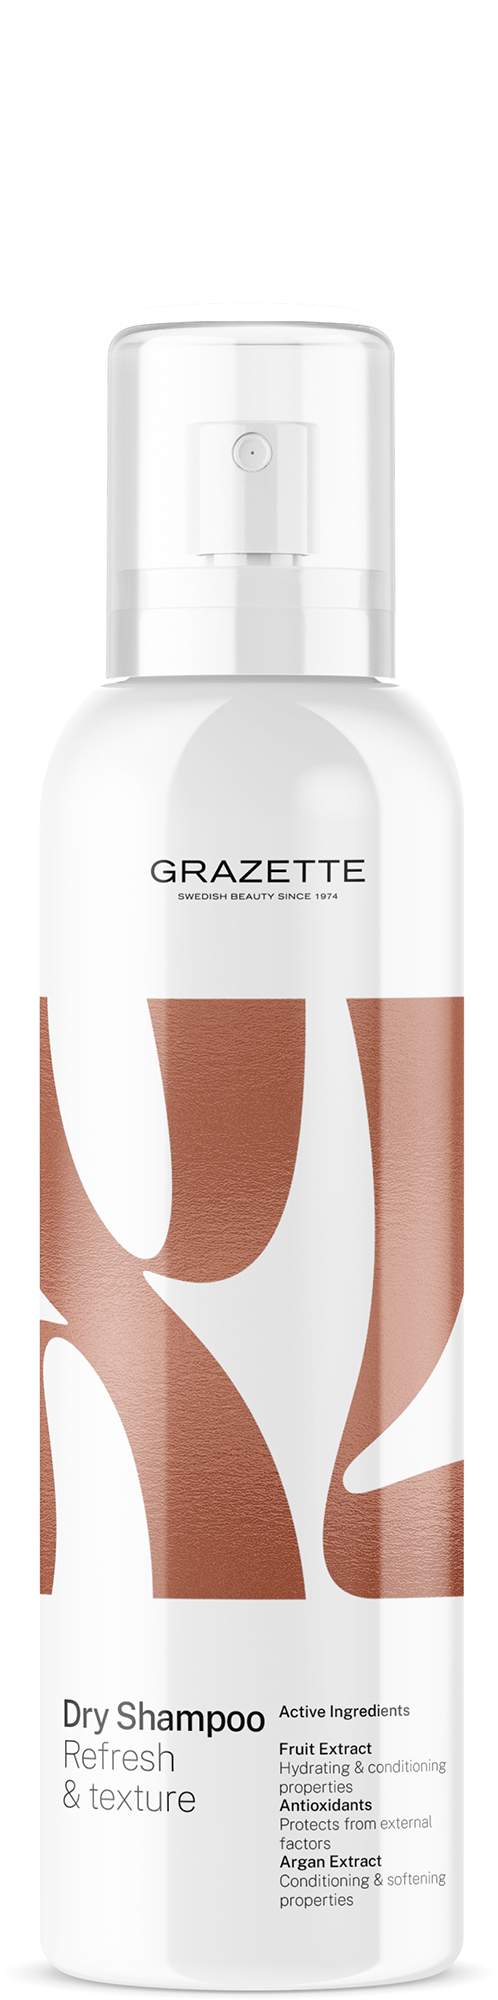 Grazette XL Salty Shaper 200 ml